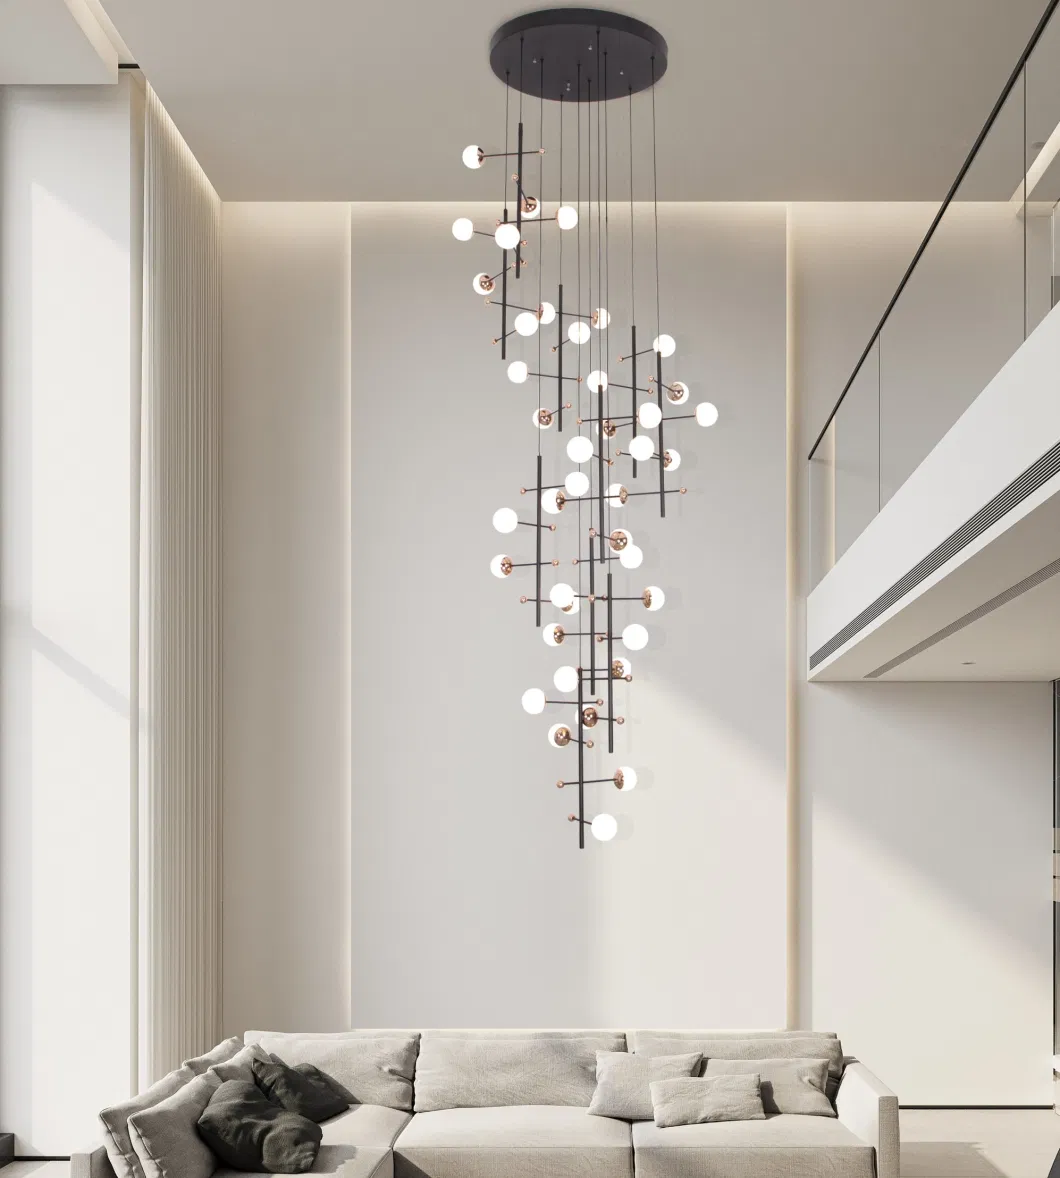 Masivel Modern Living Room Bedroom Dining Pendant Lamp Ceiling Light